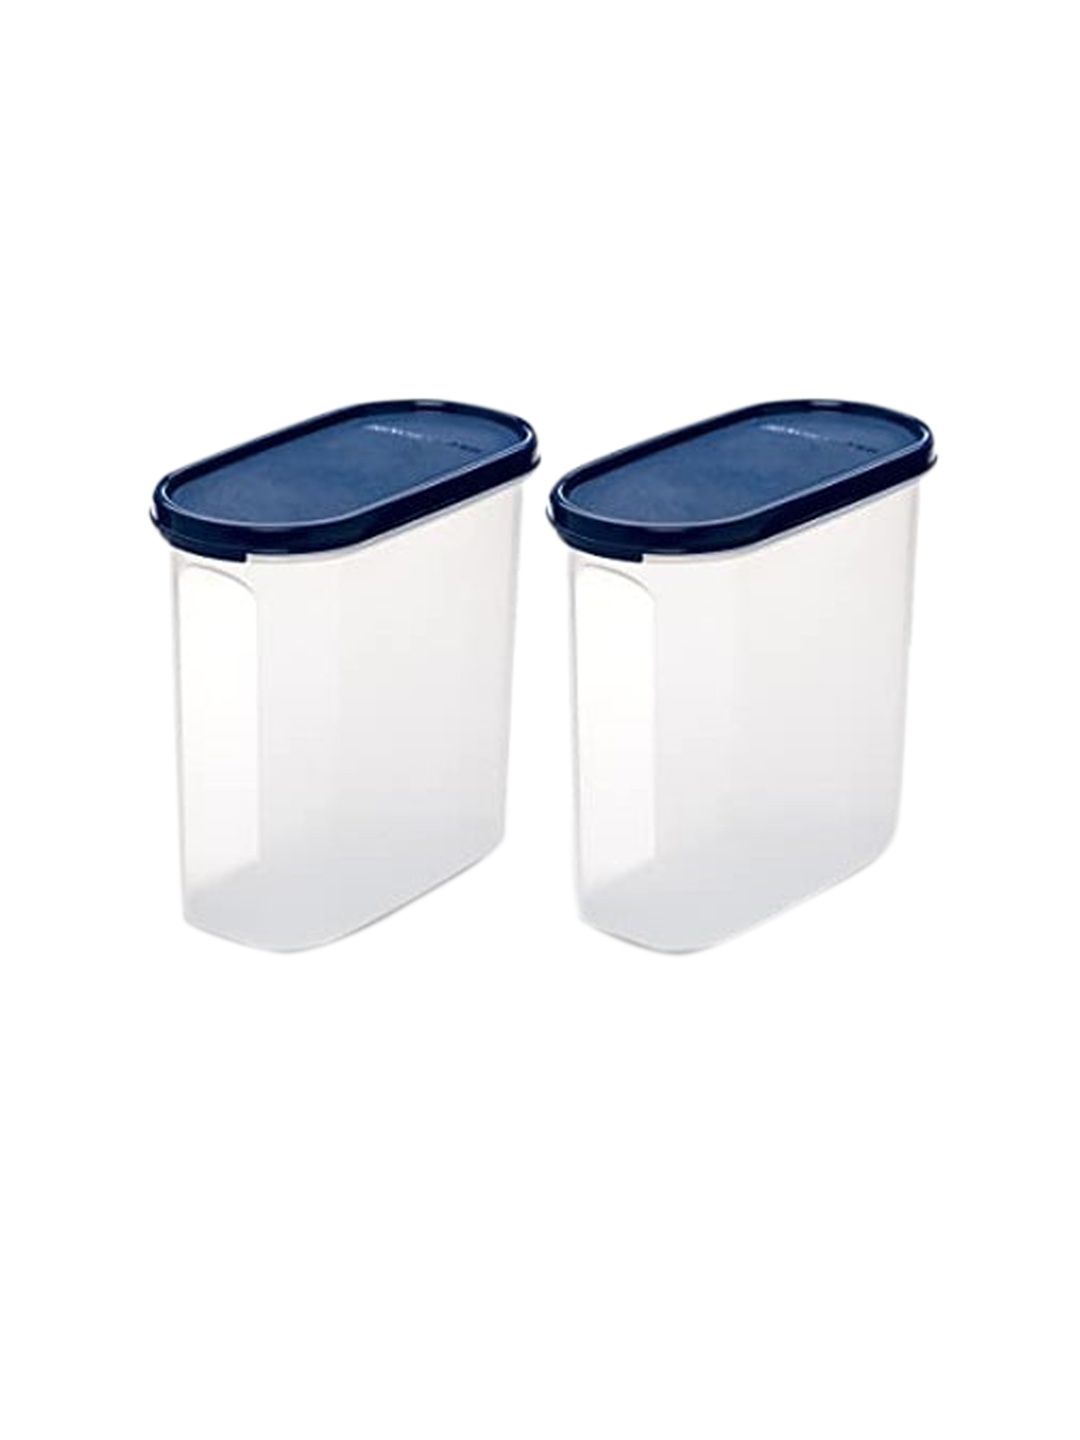 SignoraWare Set of 2 Blue & Transparent Plastic Kitchen Storage Container Price in India